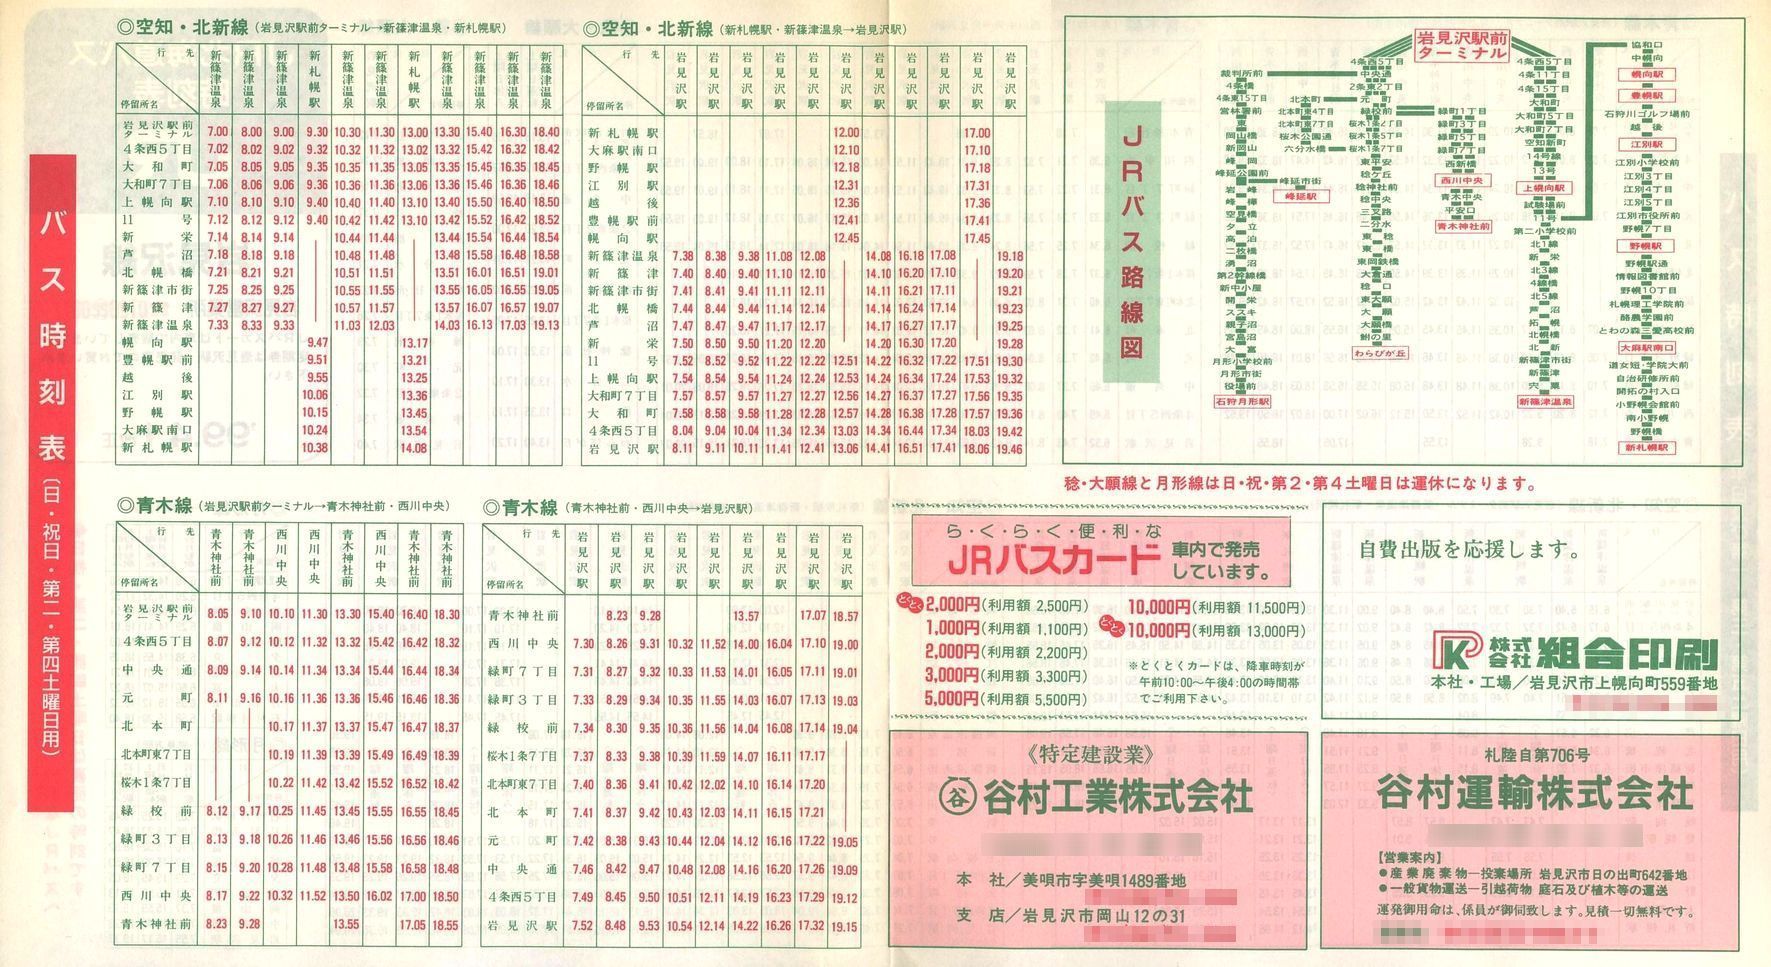 1999-04-01改正_ＪＲ北海道バス_岩見沢線時刻表裏面